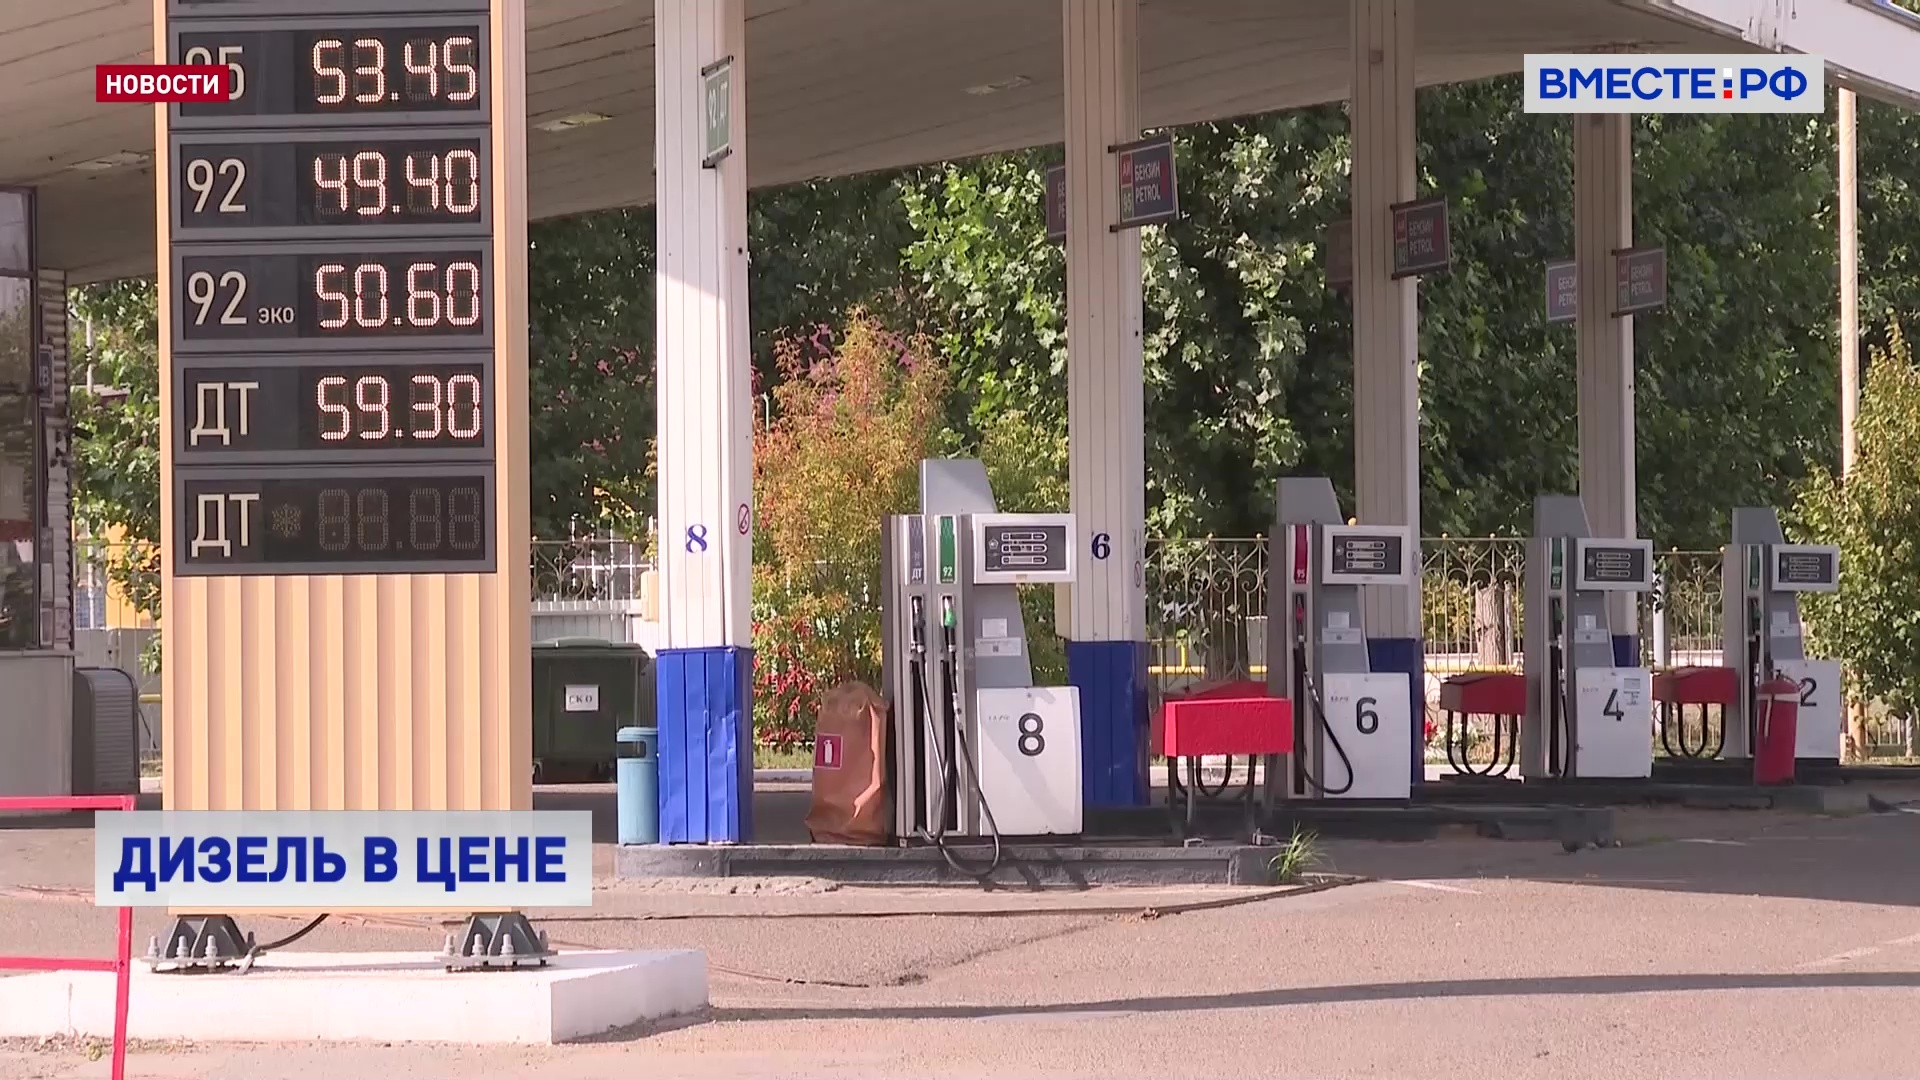 Государство должно регулировать цены на топливо в определенных сферах, считает Широков